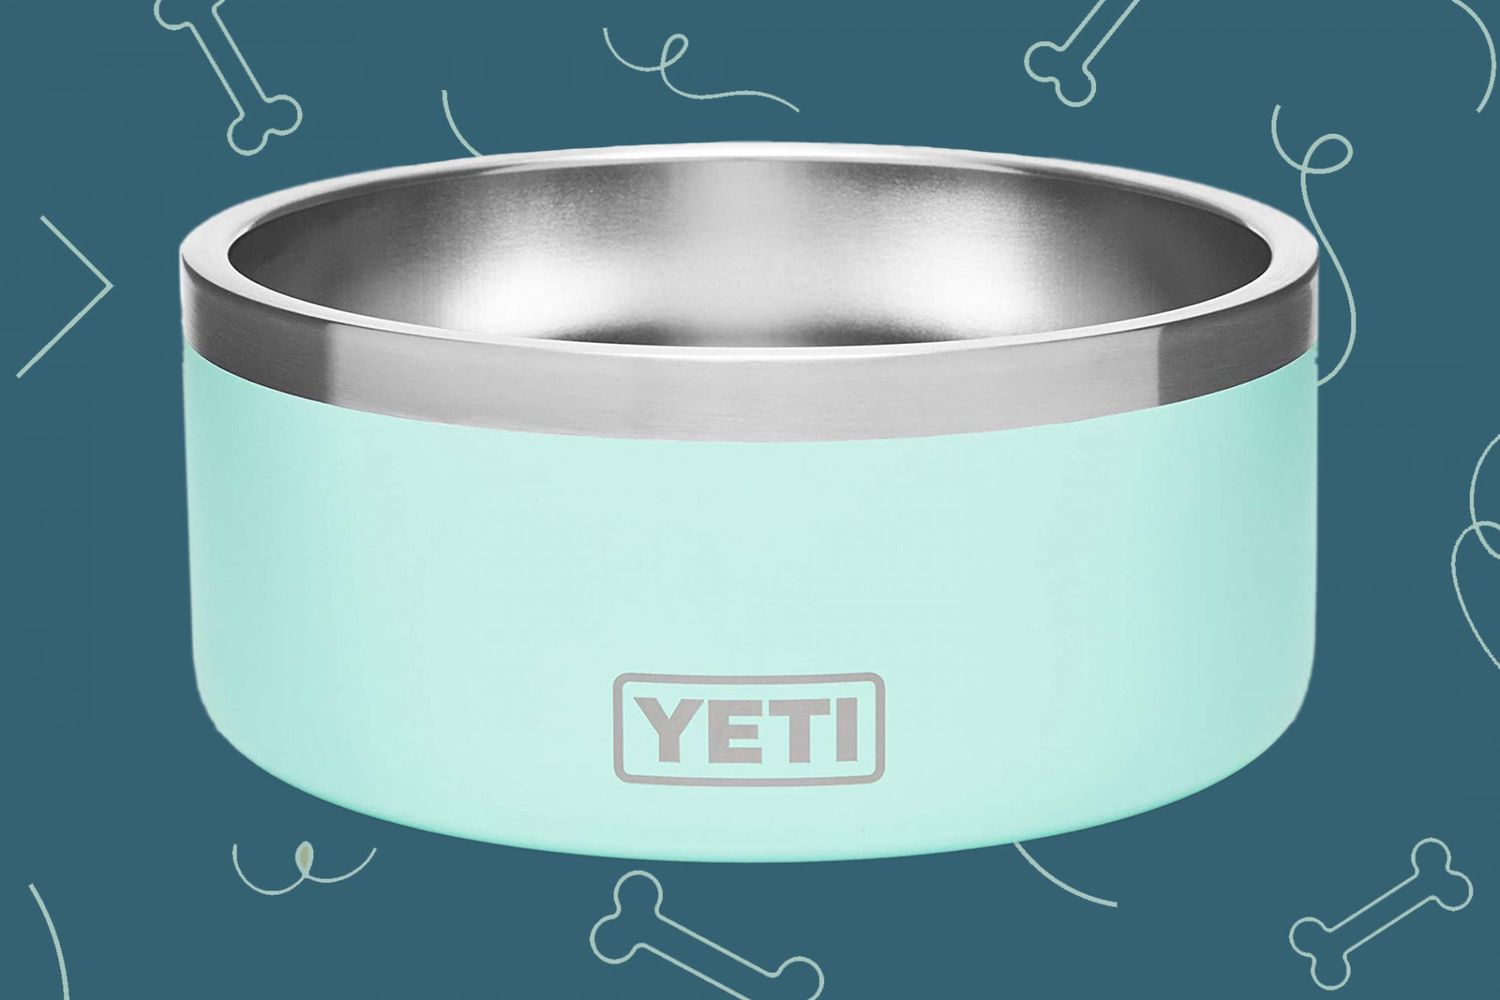 Product photo of Yeti bowl